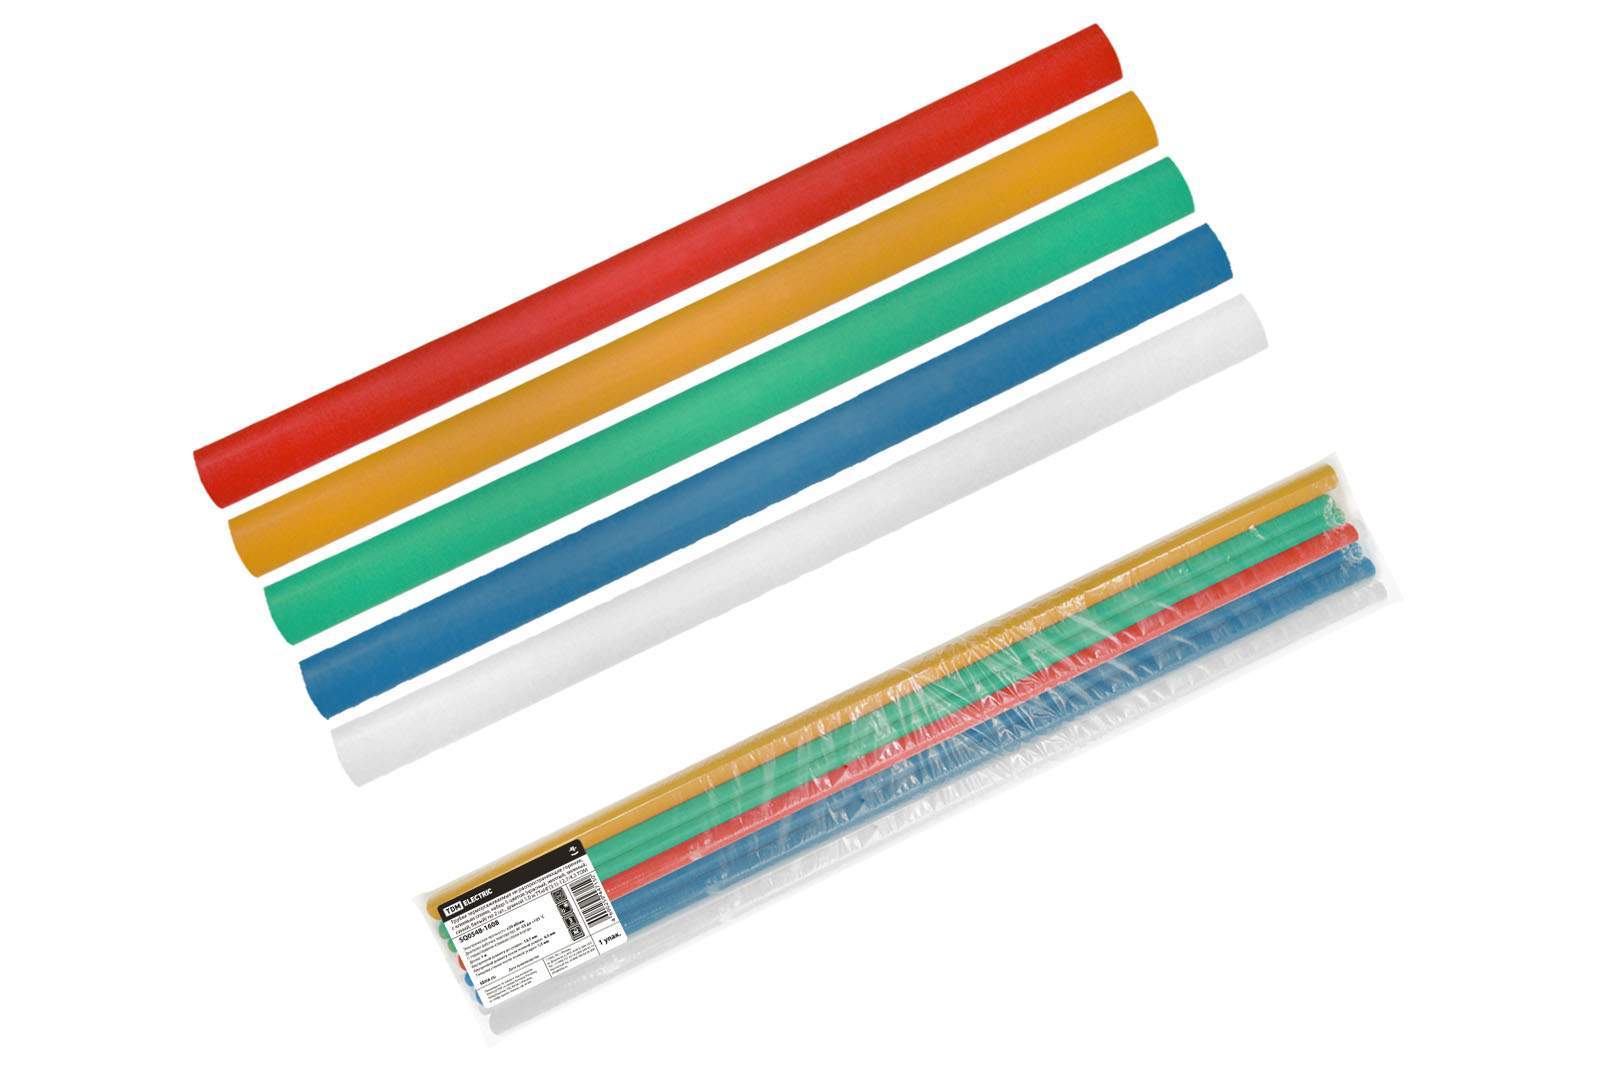 трубки термоусаживаемые, клеевые, набор 5 цветов по 2 шт. тткнг(3:1)-12,7/4,3 tdm от BTSprom.by